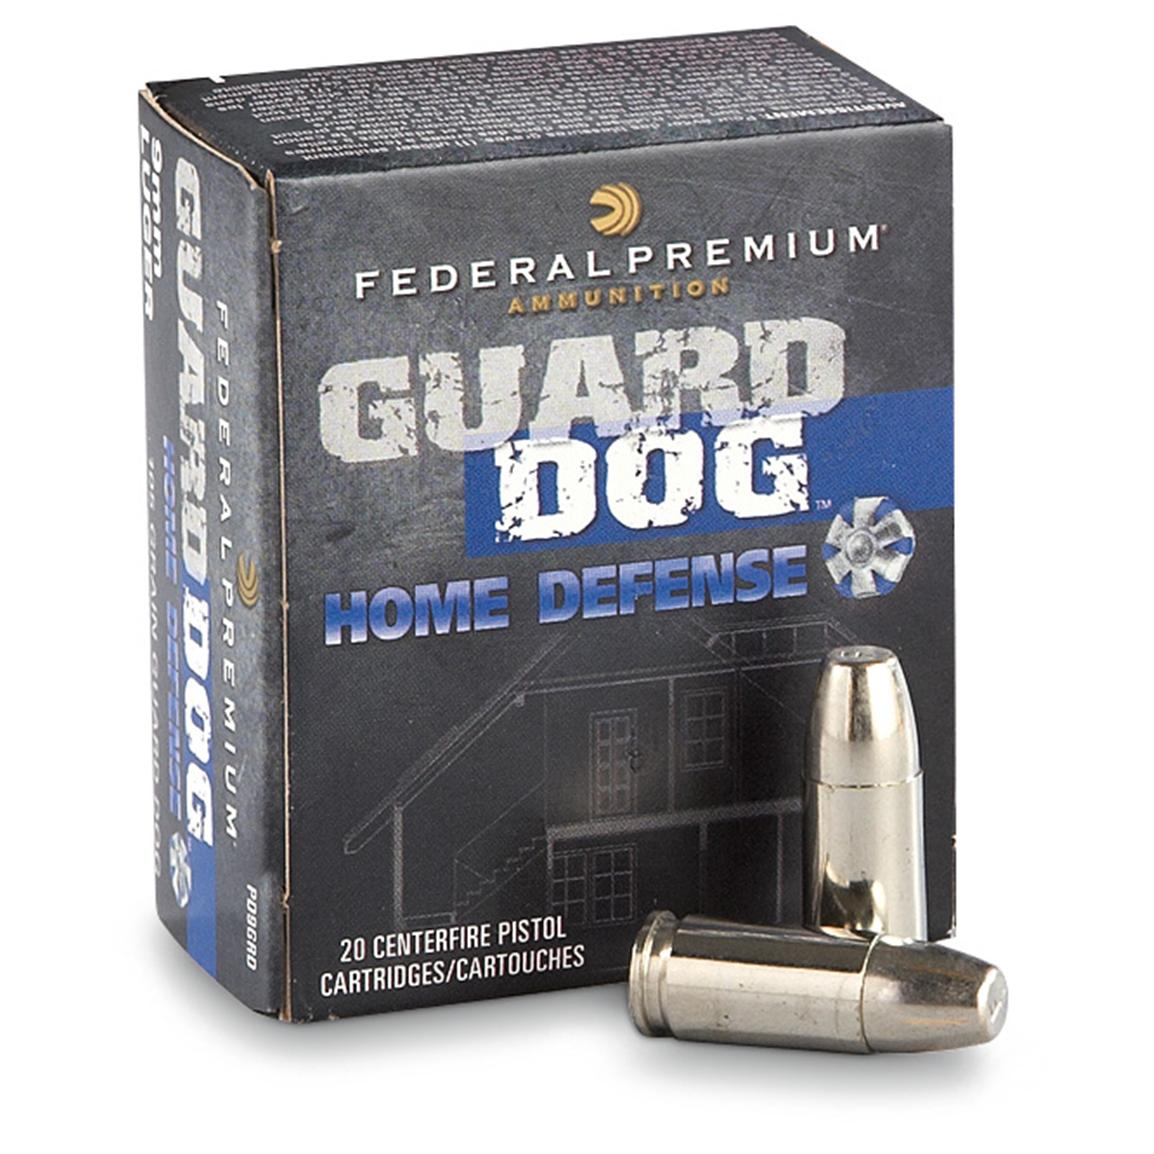 Mail Rebate Form For Federal Ammunition 9mm Luger